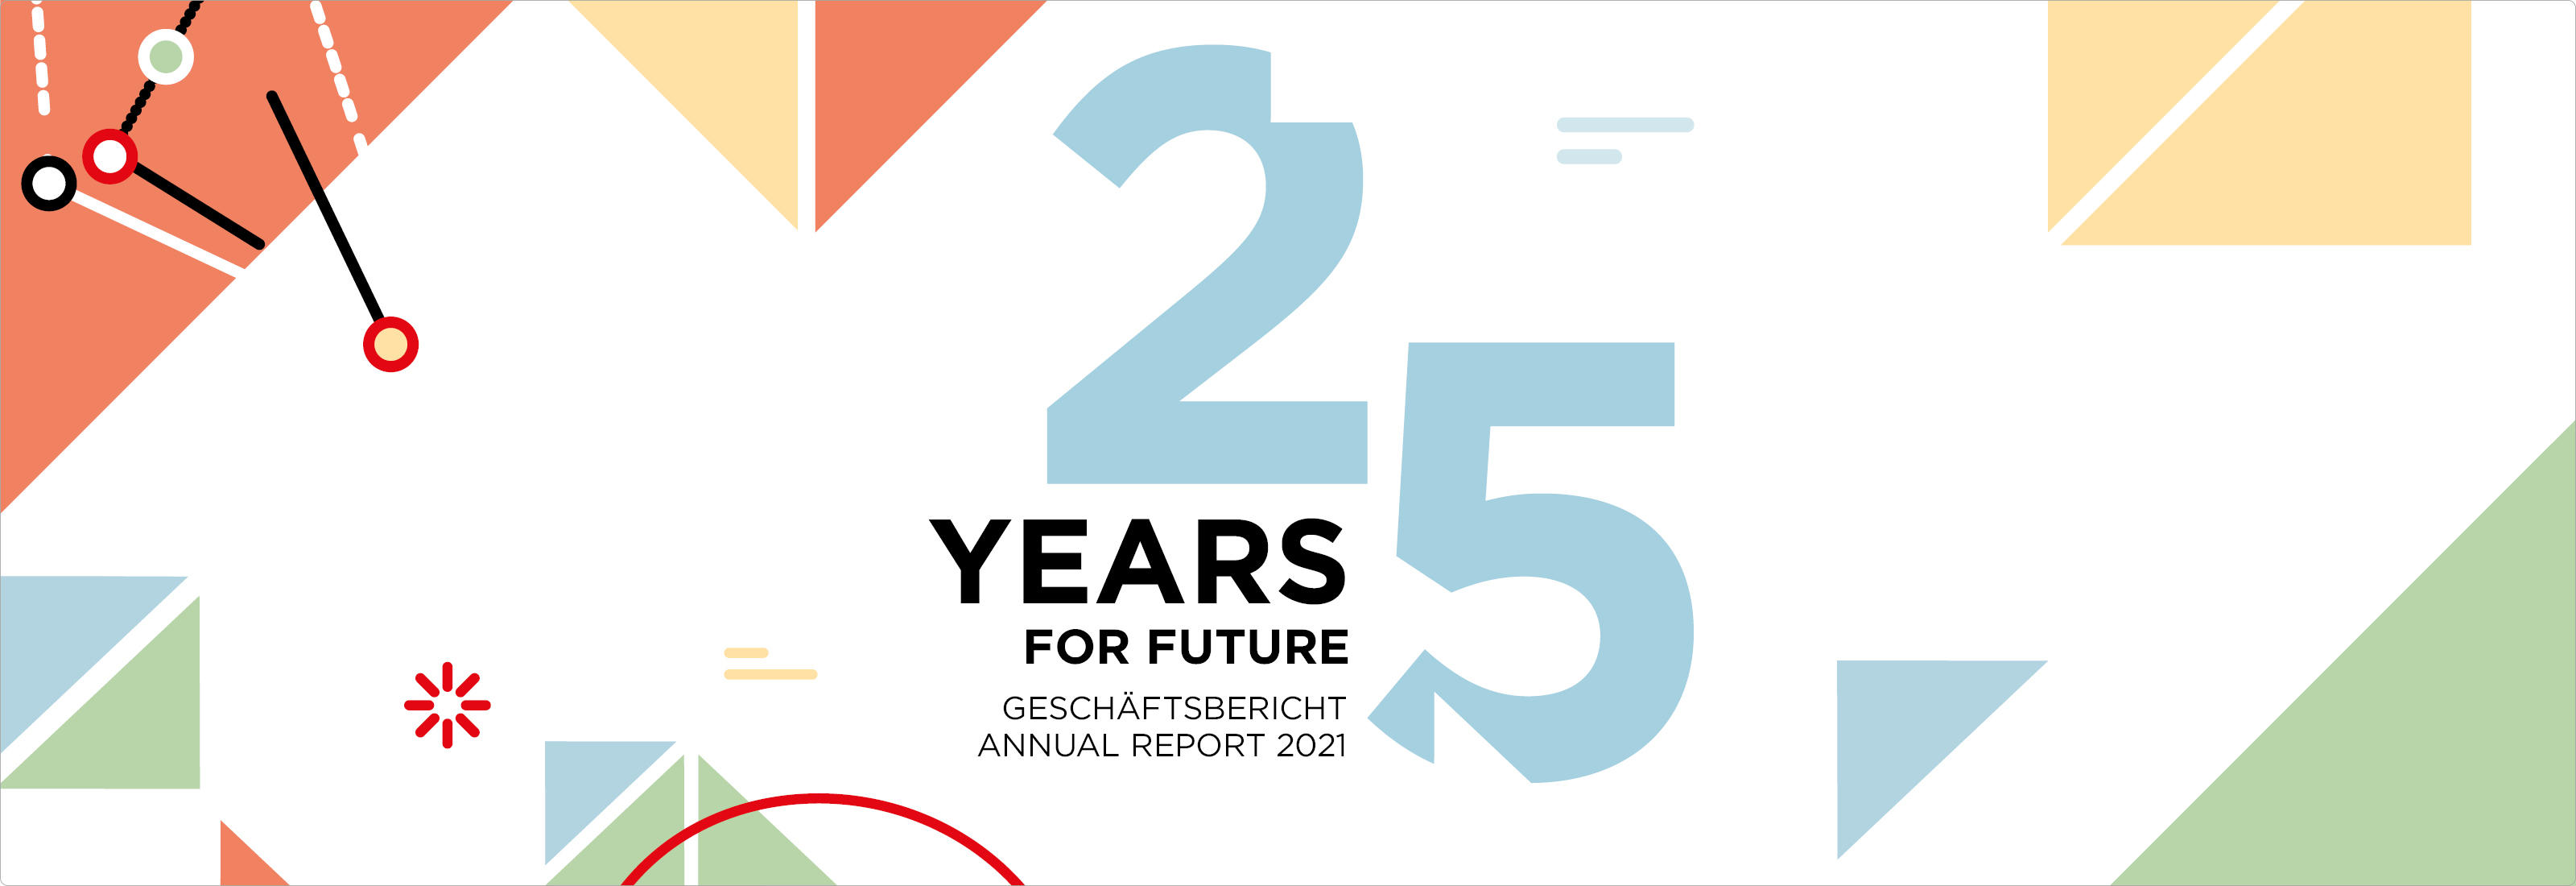 Geschäftsbericht 2021 25 Years for Future – Jahr der Meilensteine